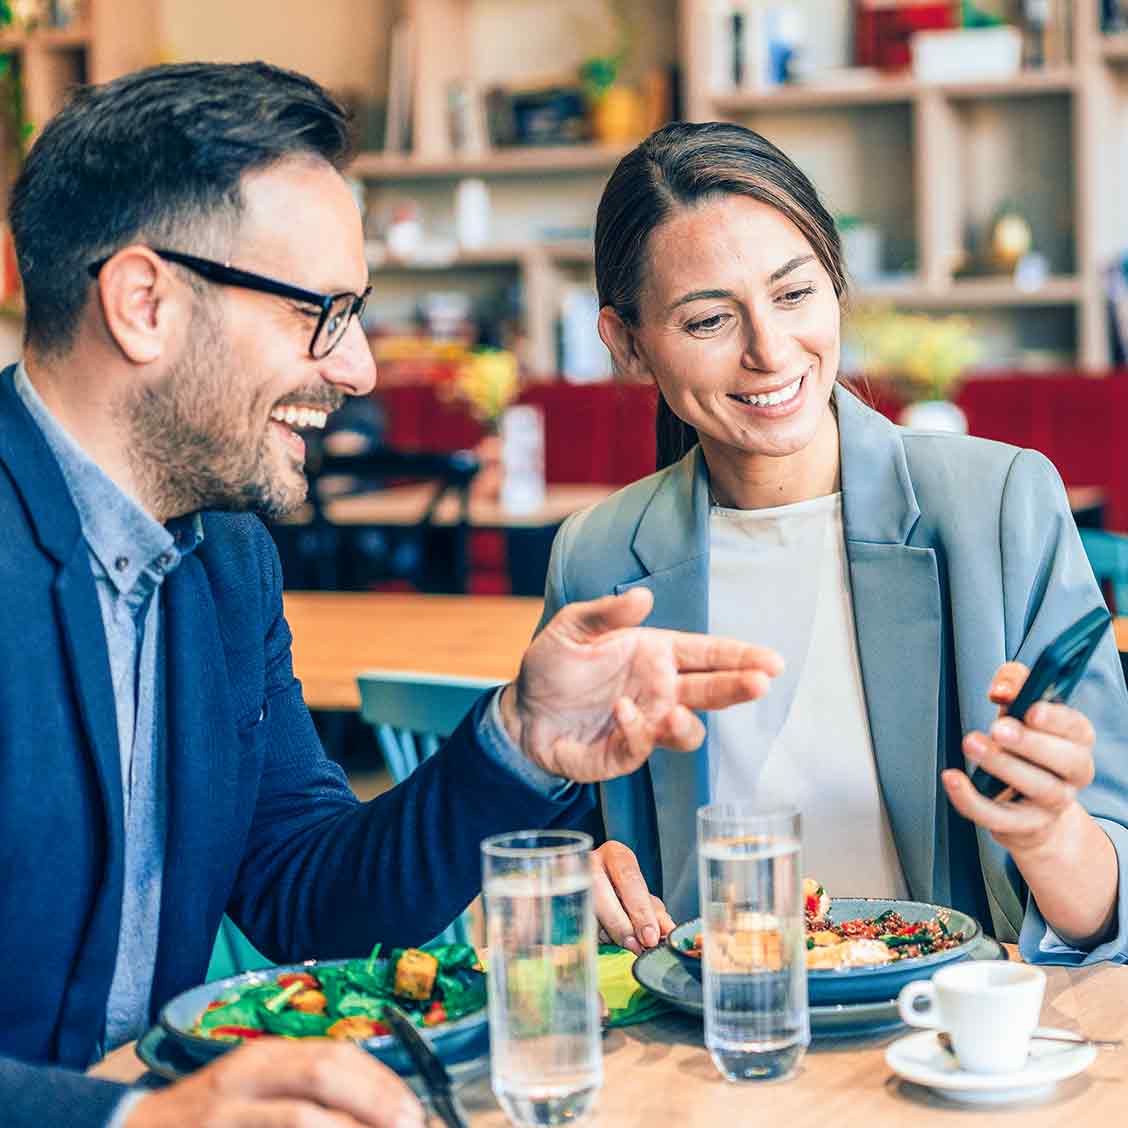 Eine Frau und ein Mann in legerer Business-Kleidung sitzen an einem Tisch und schauen lachend gemeinsam auf ein Smartphone. Auf em Tisch stehen Speisen, Gläser mit Waser und eine Tasse Espresso.